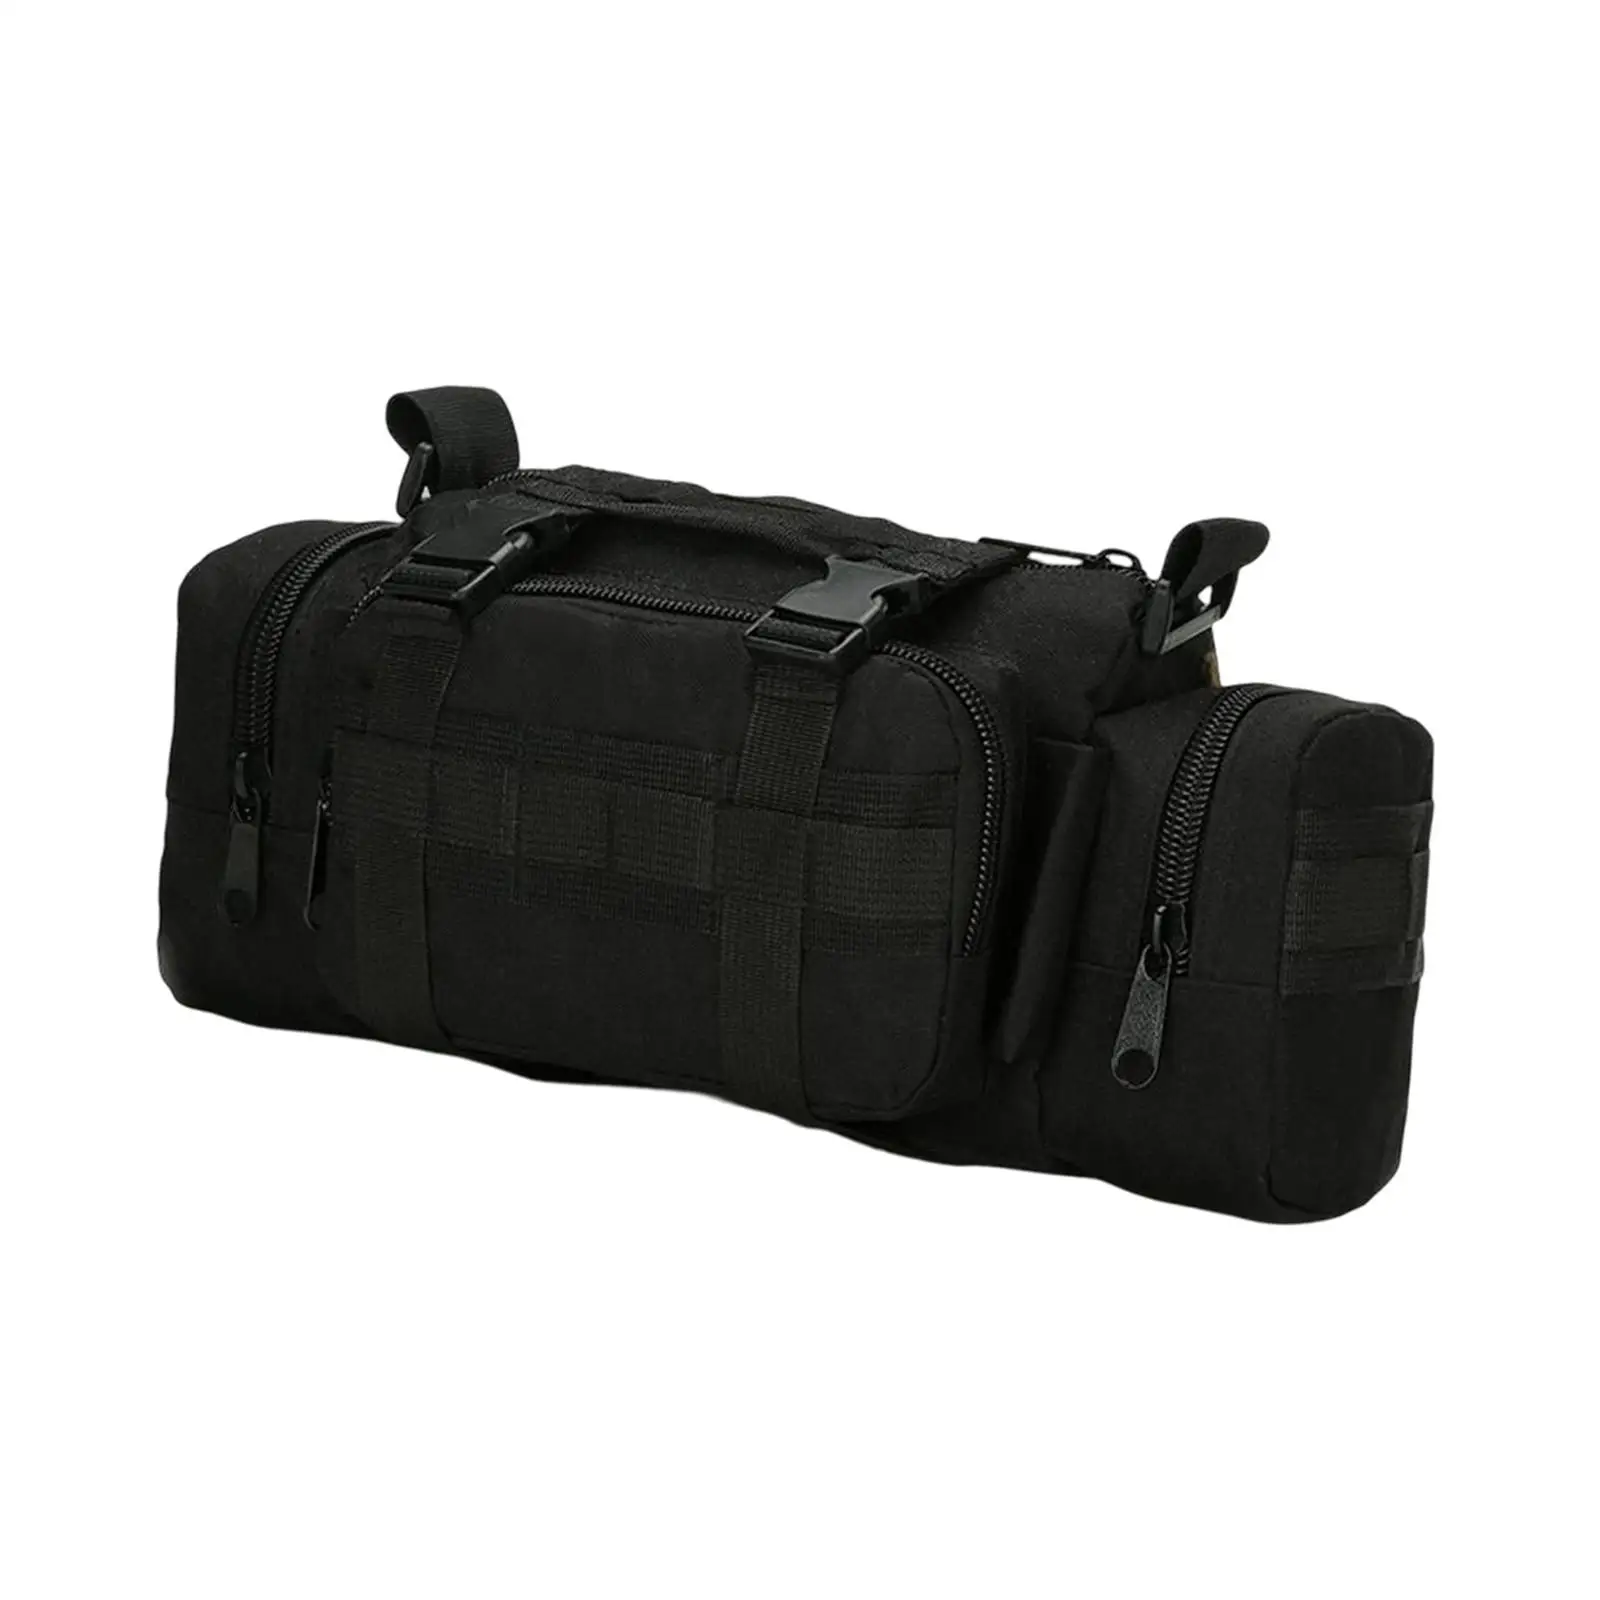 Outdoor Shoulder Bag Adjustable Strap Activities Waterproof Supplies Accessories Waist Bag for Travel Hiking Men Women Sports